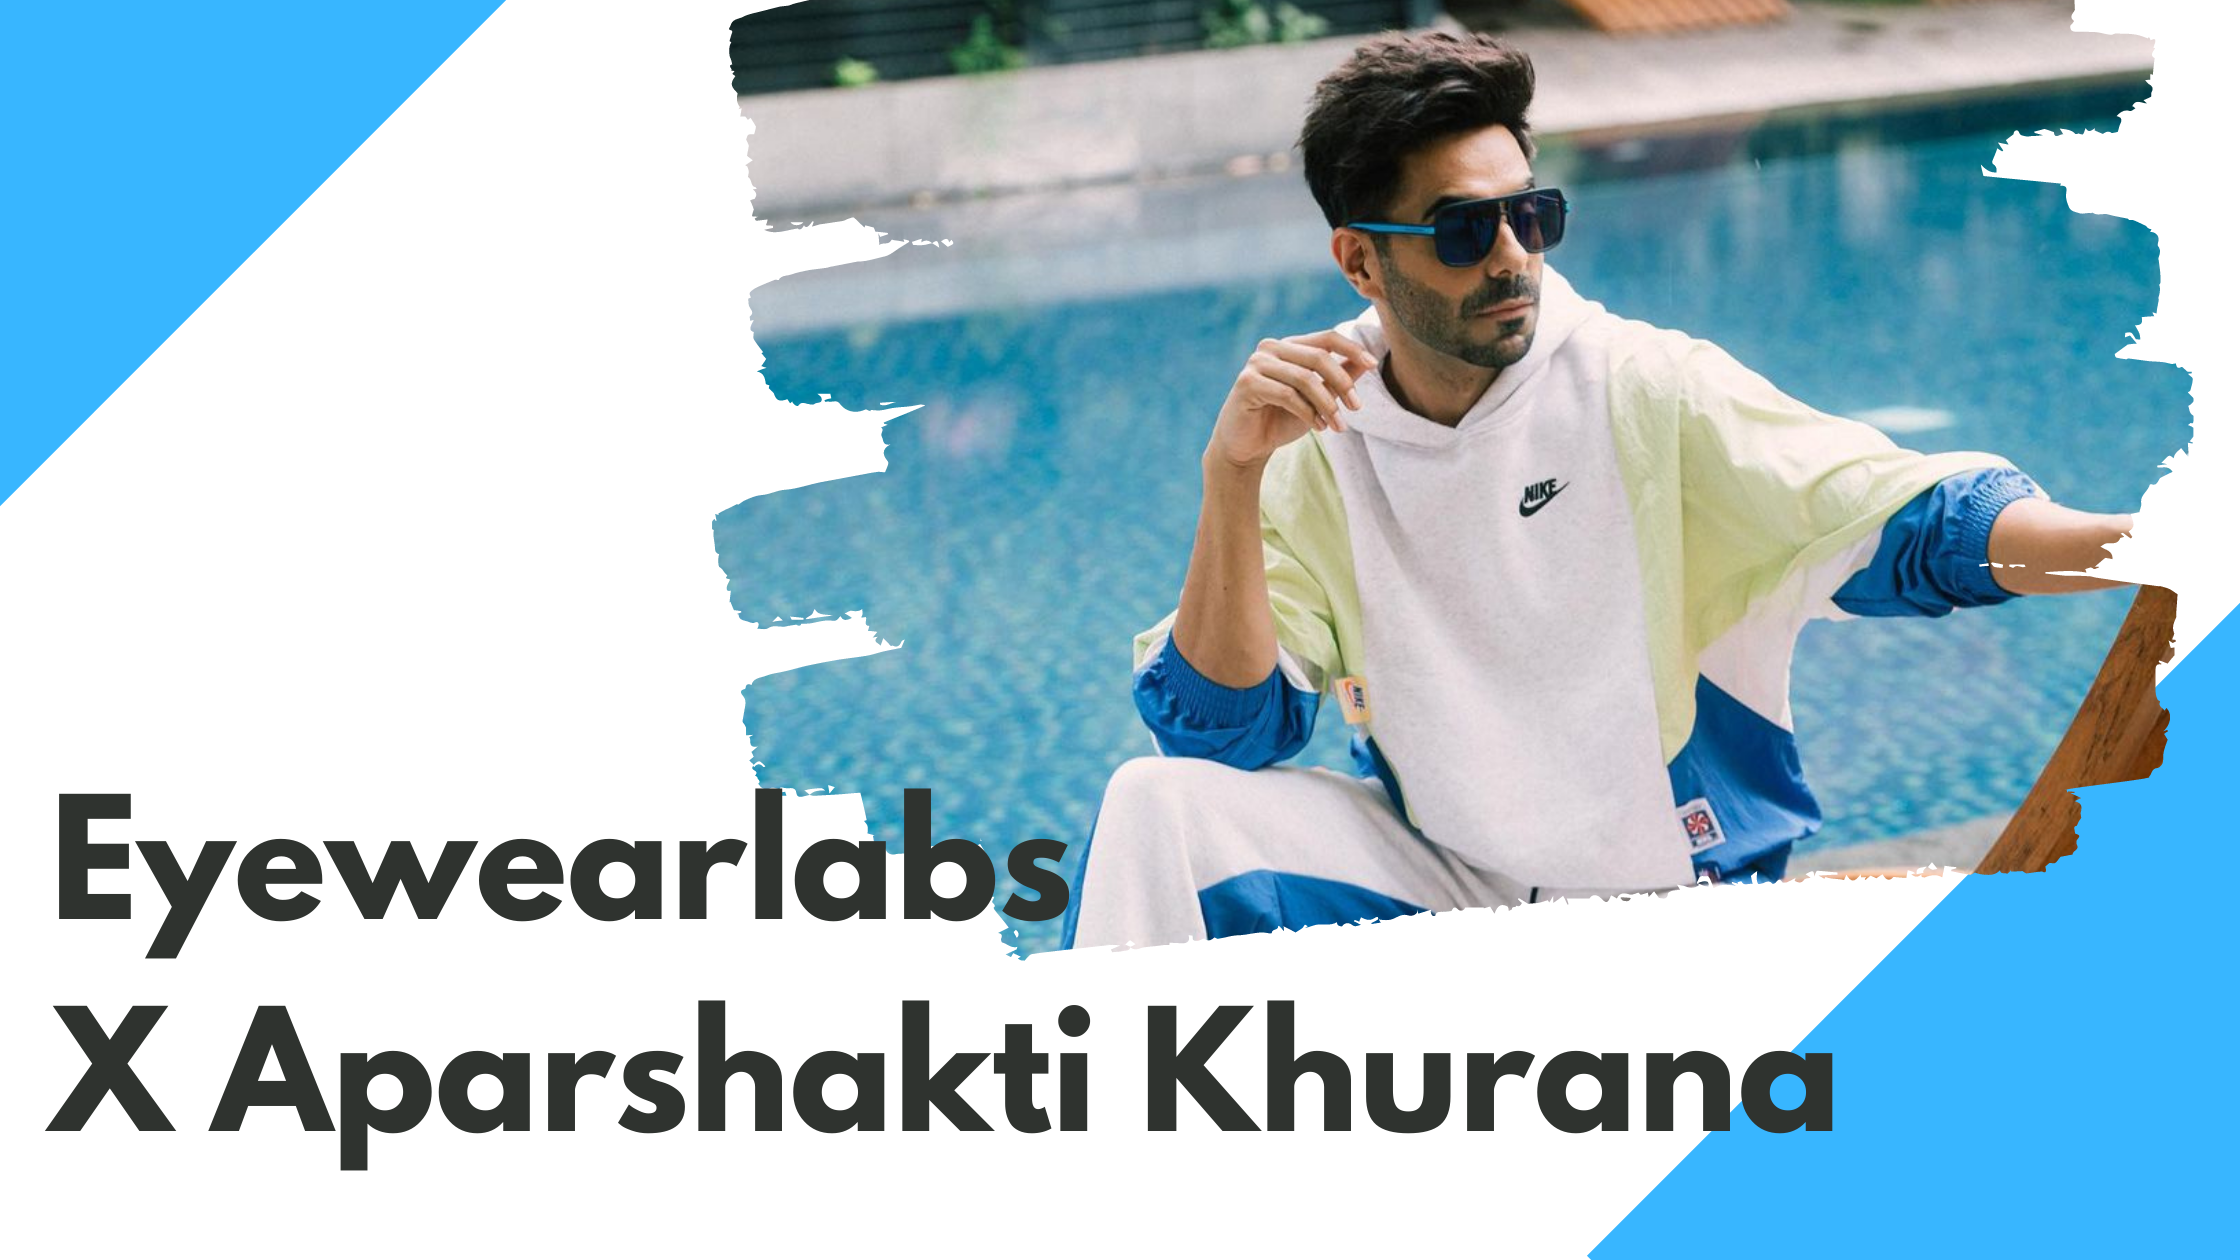 Aparshakti Khurana’s Go to Sunglasses Brand - Eyewearlabs